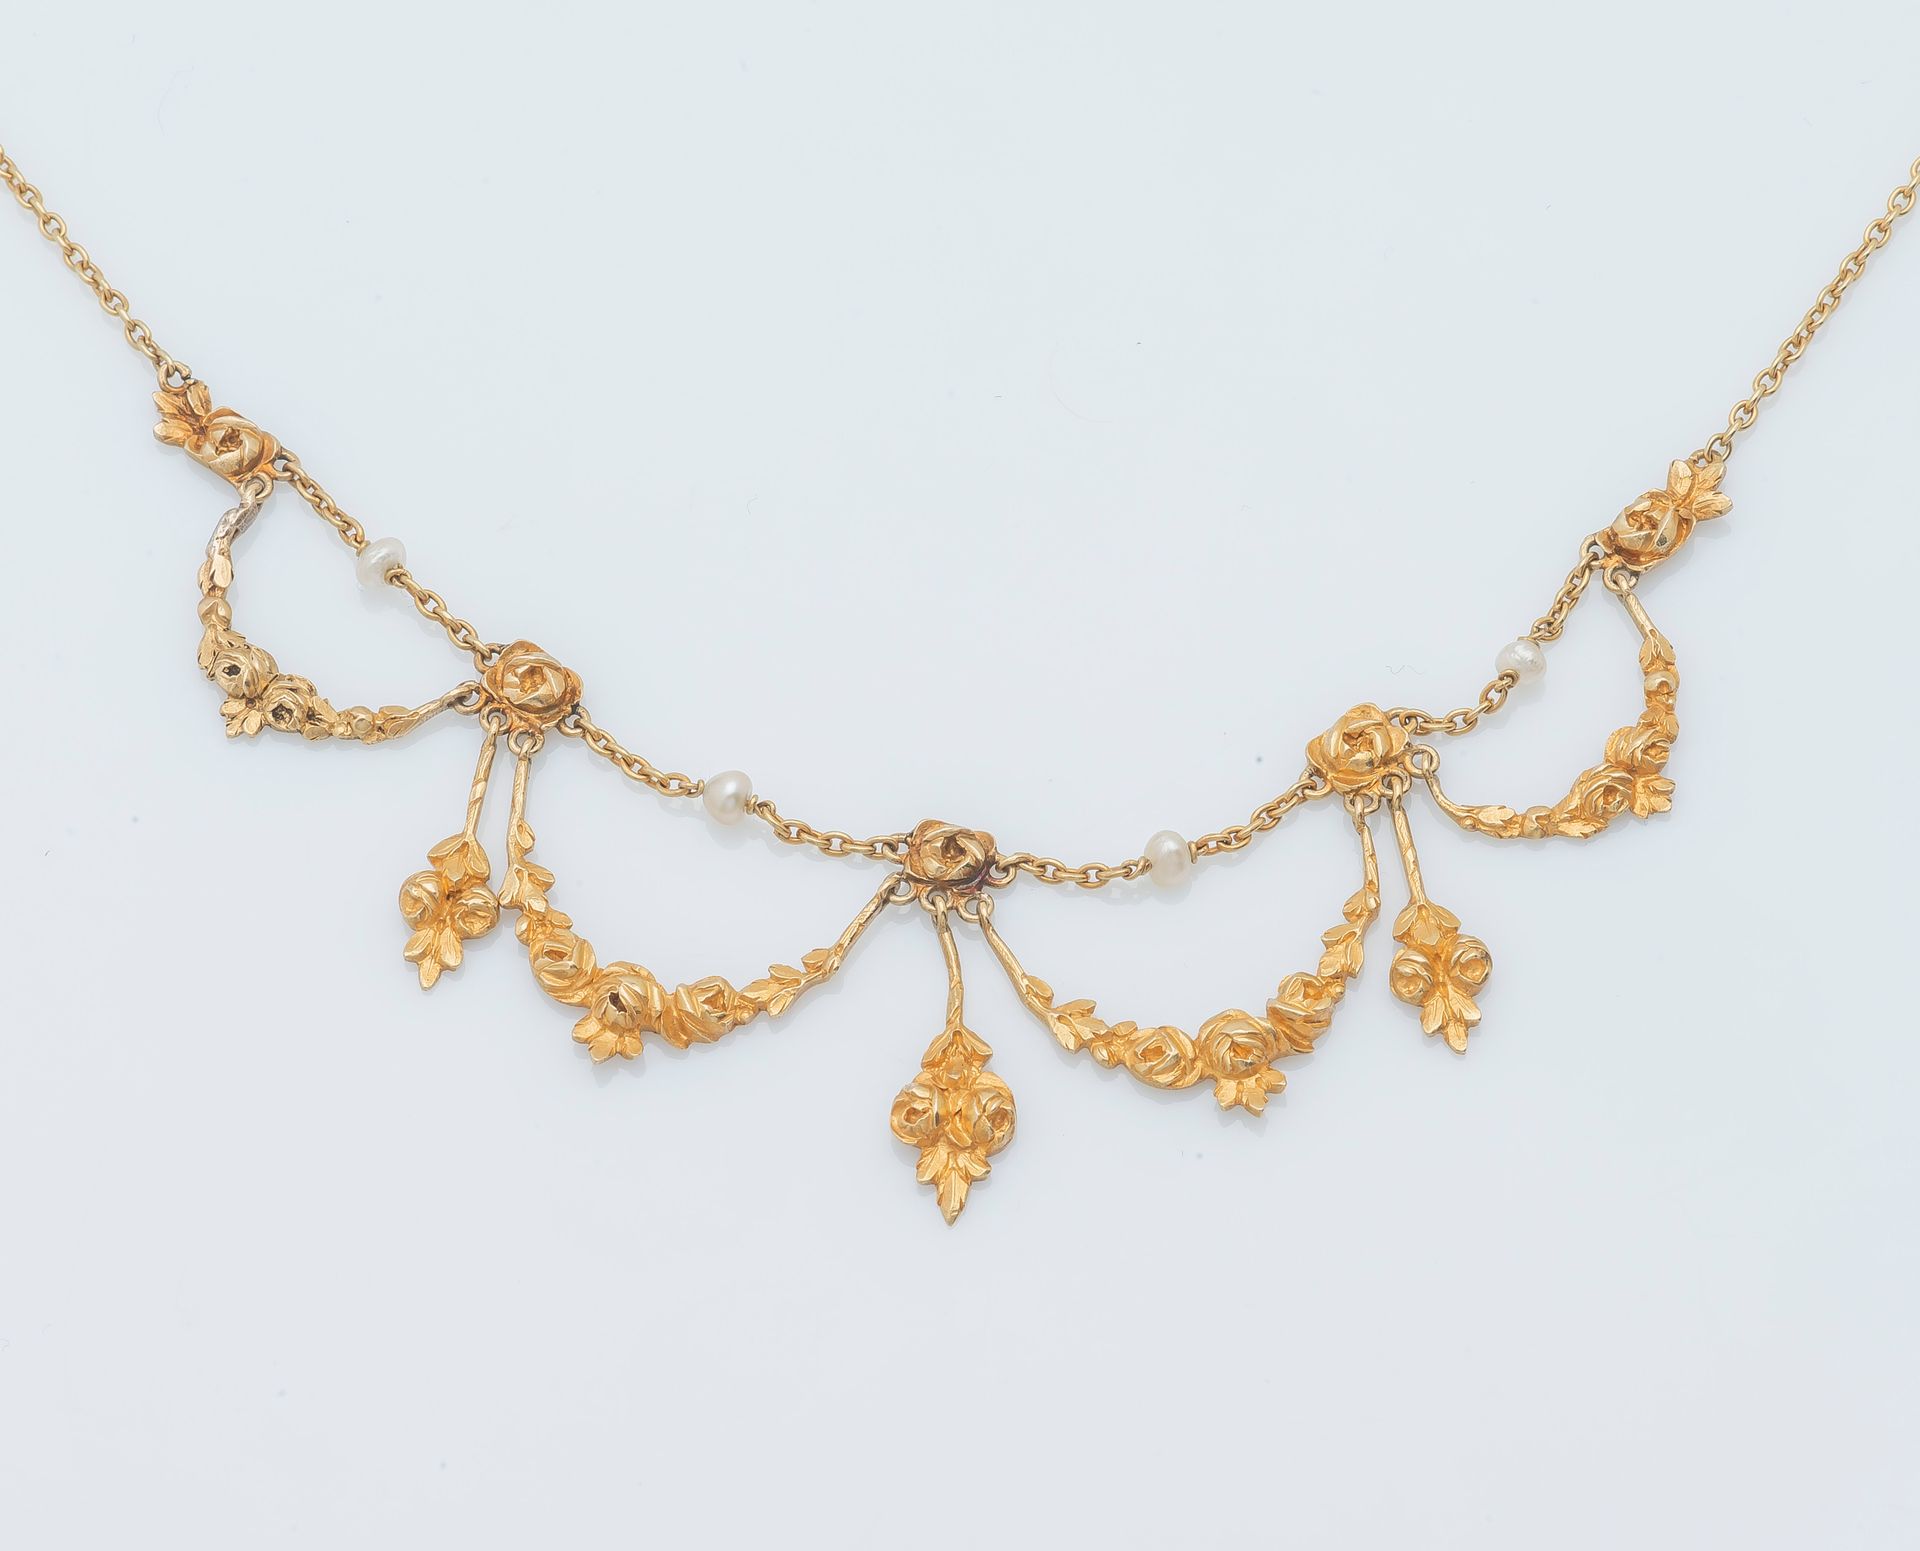 Null 18K黄金(750‰)项链项圈，饰有落地玫瑰花环，中间穿插珍珠。法国作品，19世纪。

长度：44厘米 毛重：14.7克。